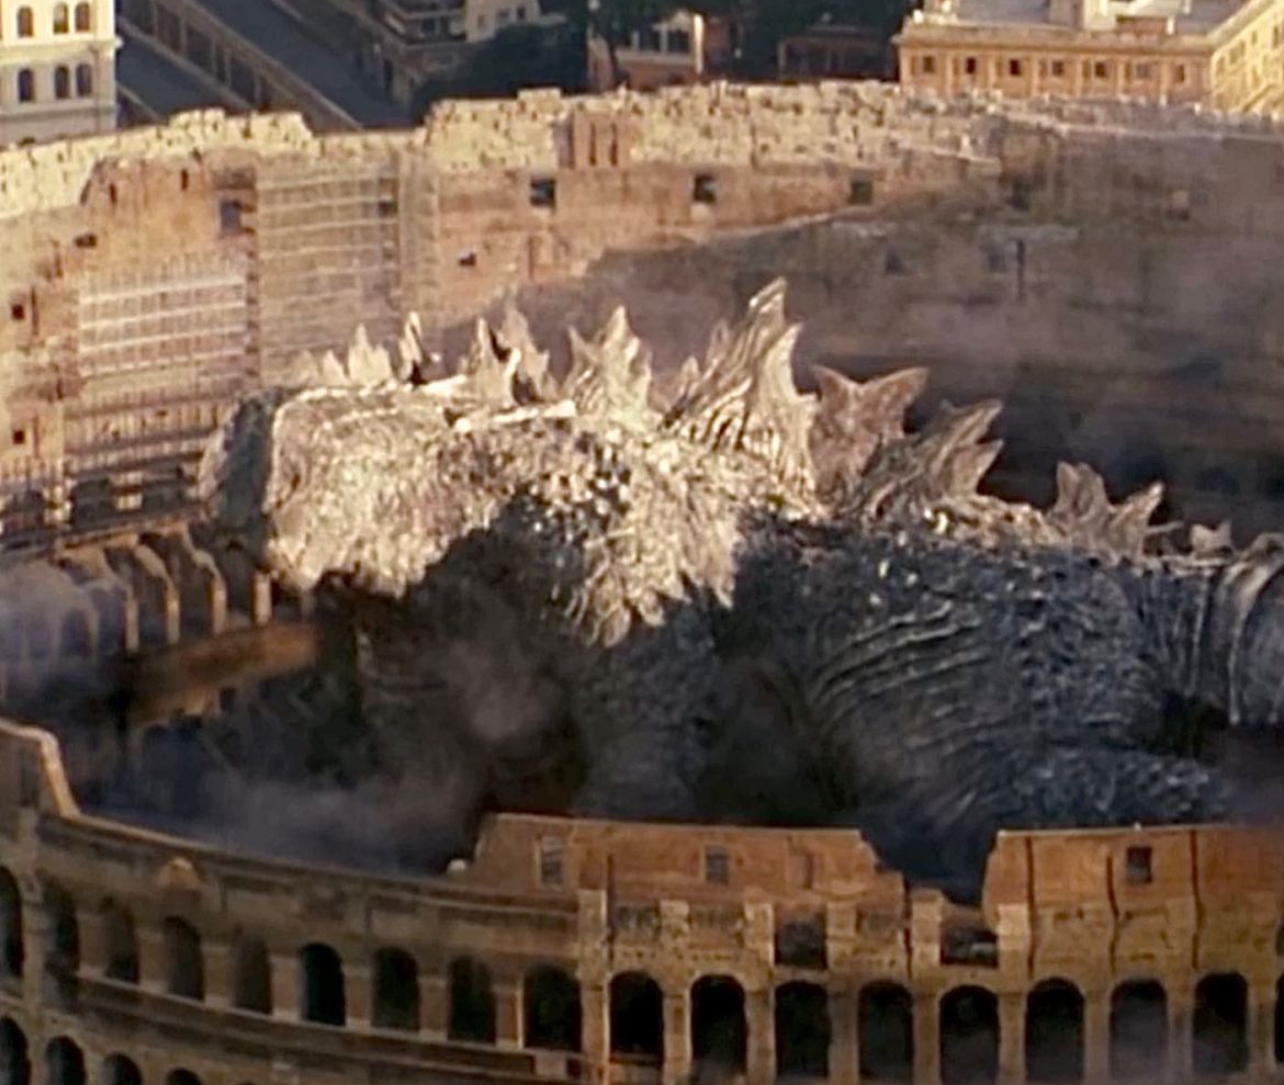 Godzilla awakens in the Colosseum